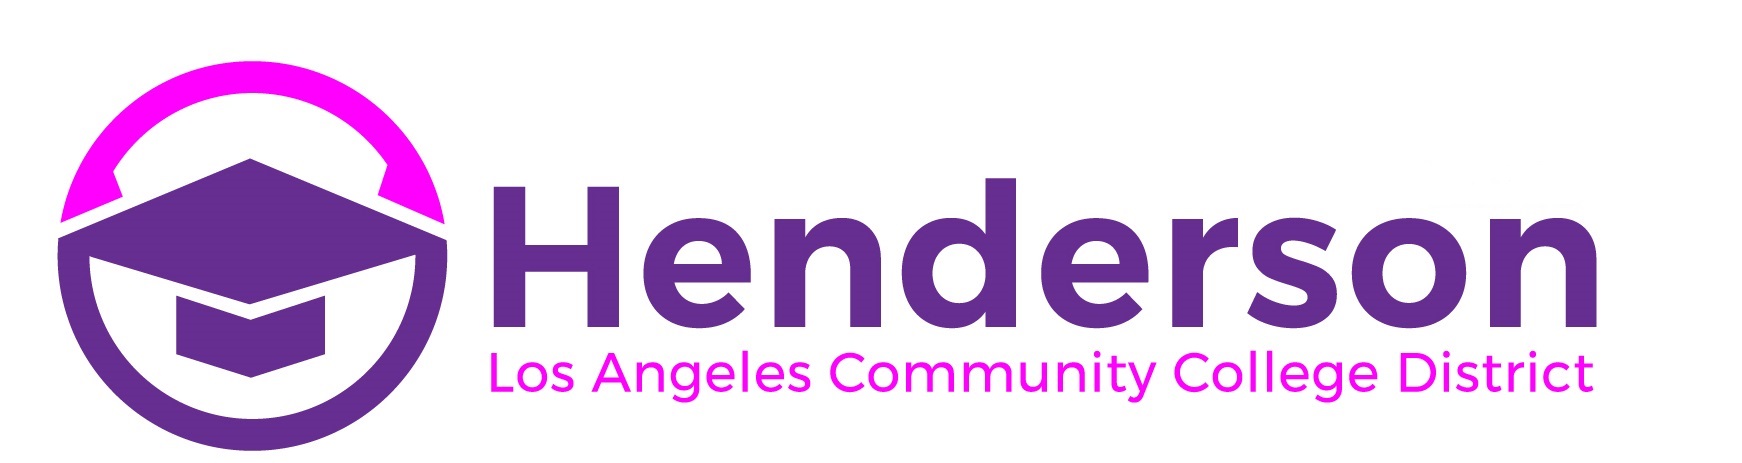 HENDERSON FOR LA COMMUNITY COLLEGE BOARD 2020